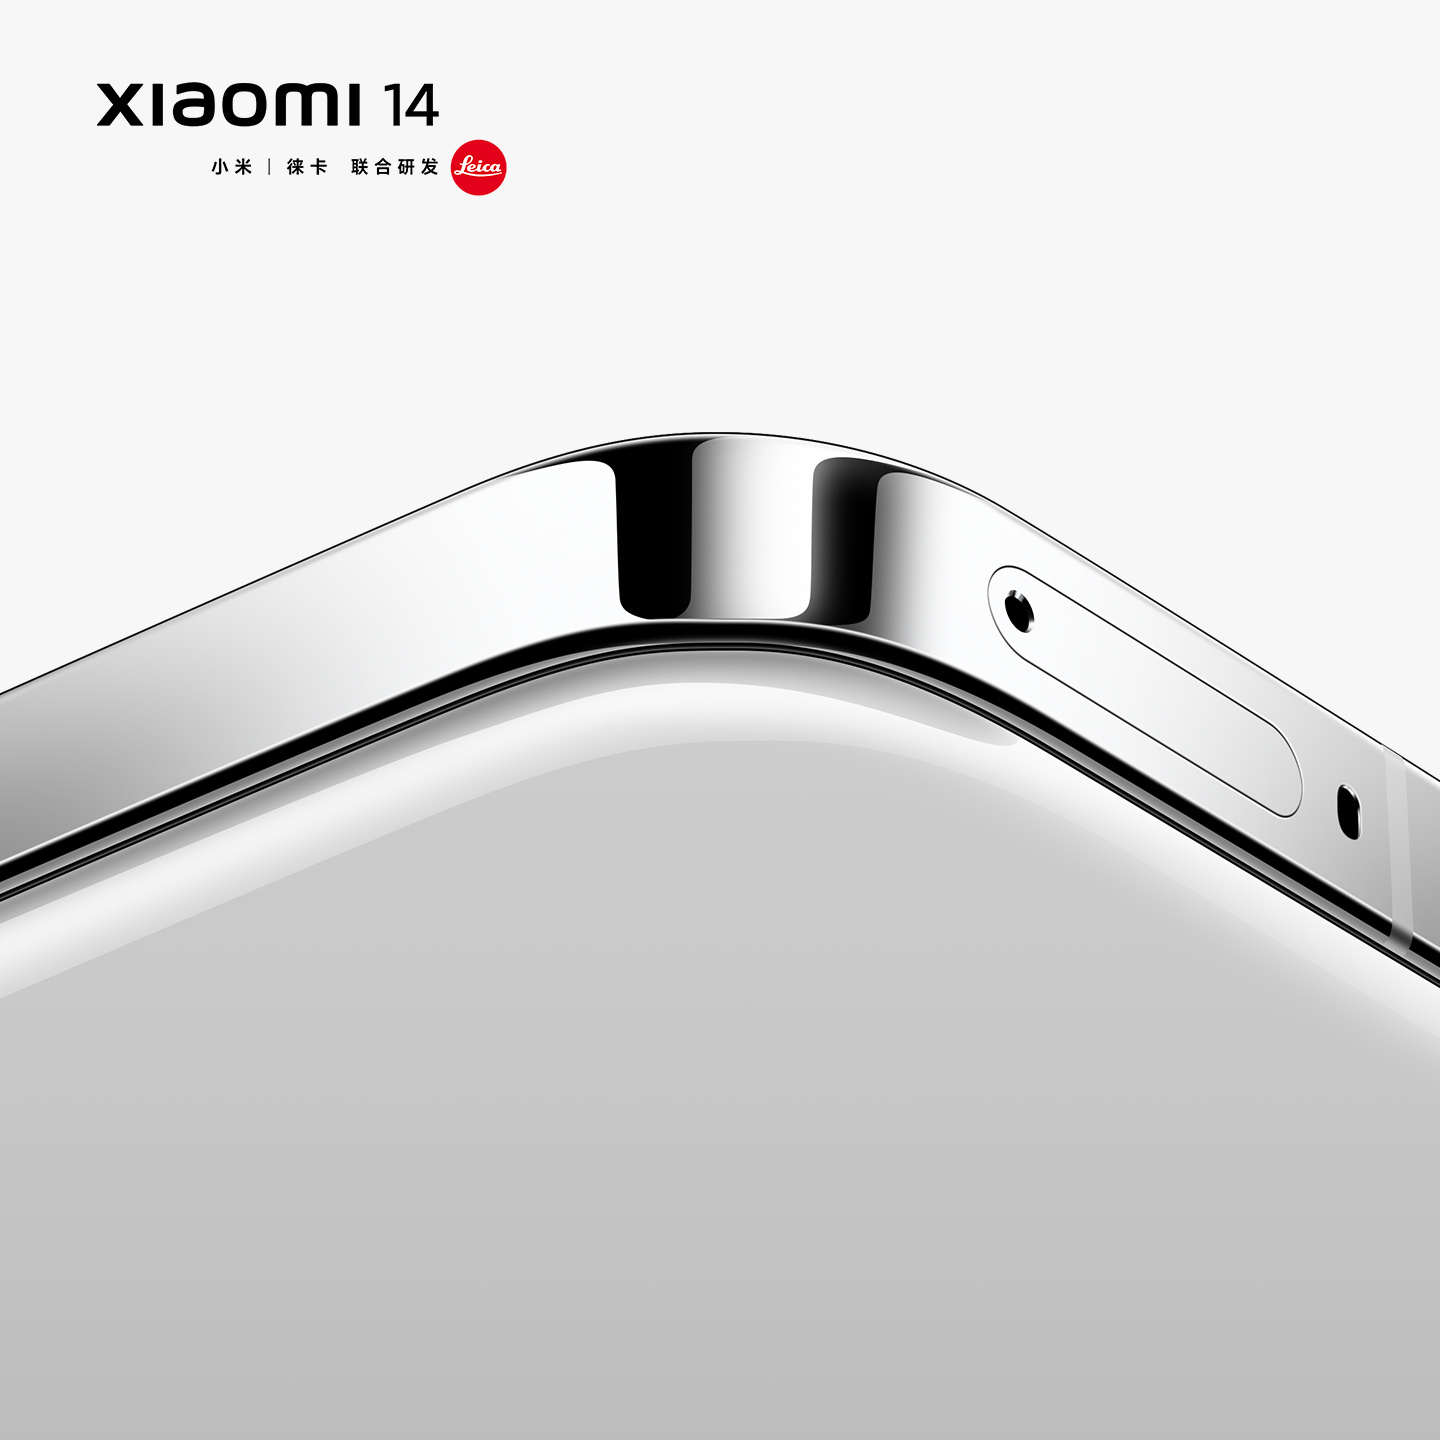 Chính thức: Xiaomi 14 ra mắt ngày 26/10, là smartphone đầu tiên dùng chip Snapdragon 8 Gen 3 - Ảnh 3.